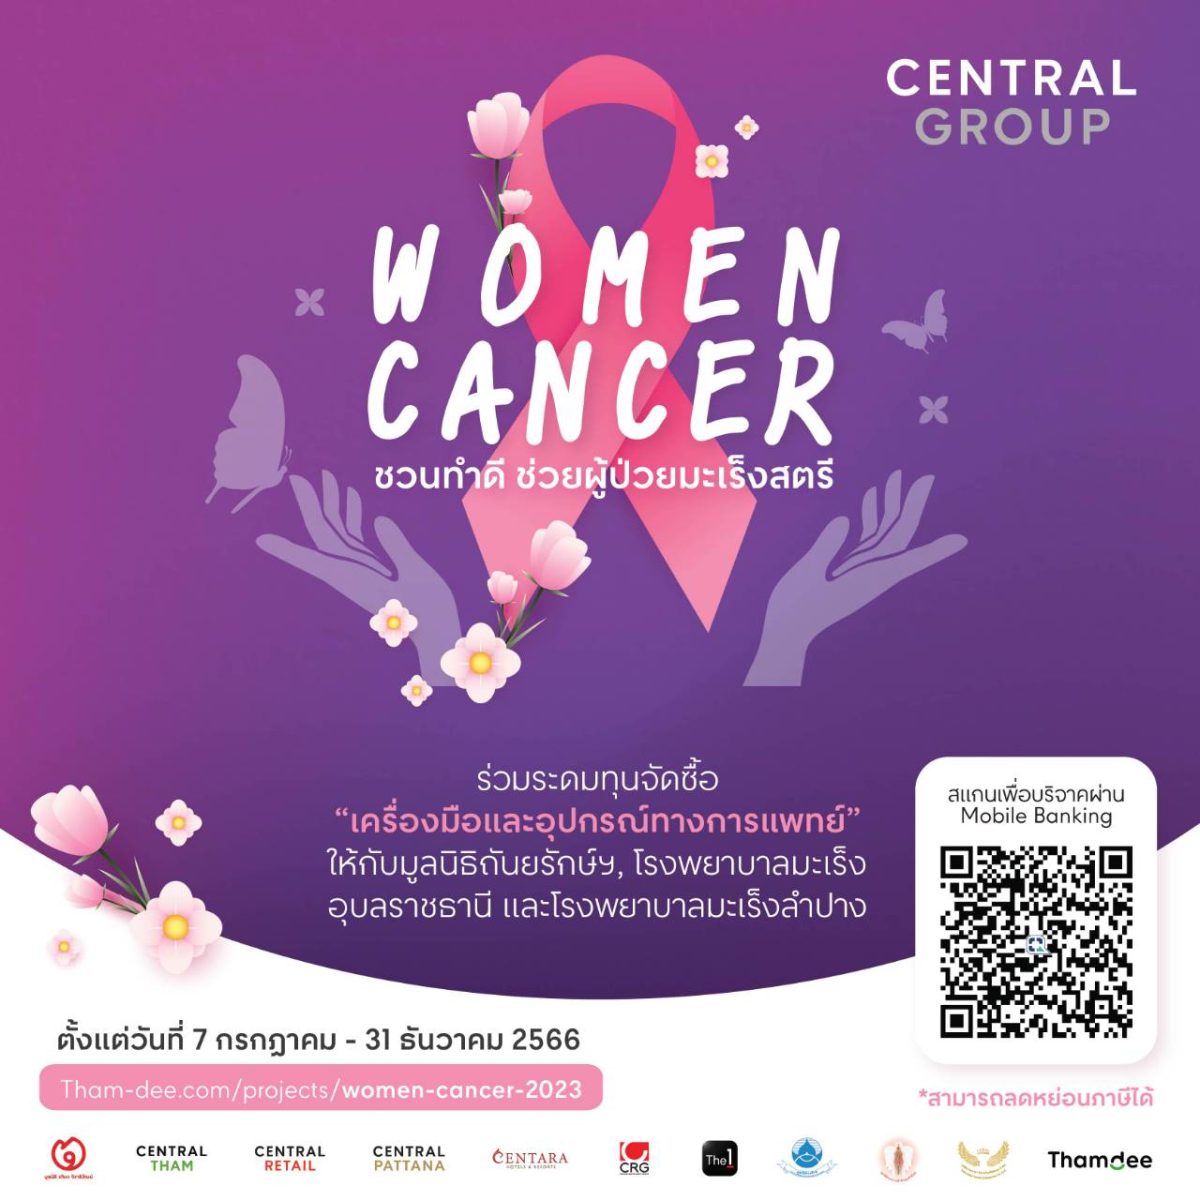 กลุ่มเซ็นทรัล และบริษัทในเครือ ชวนระดมทุนจัดซื้อ เครื่องมือและอุปกรณ์การแพทย์ กับโครงการ Central Group Women Cancer ครั้งที่